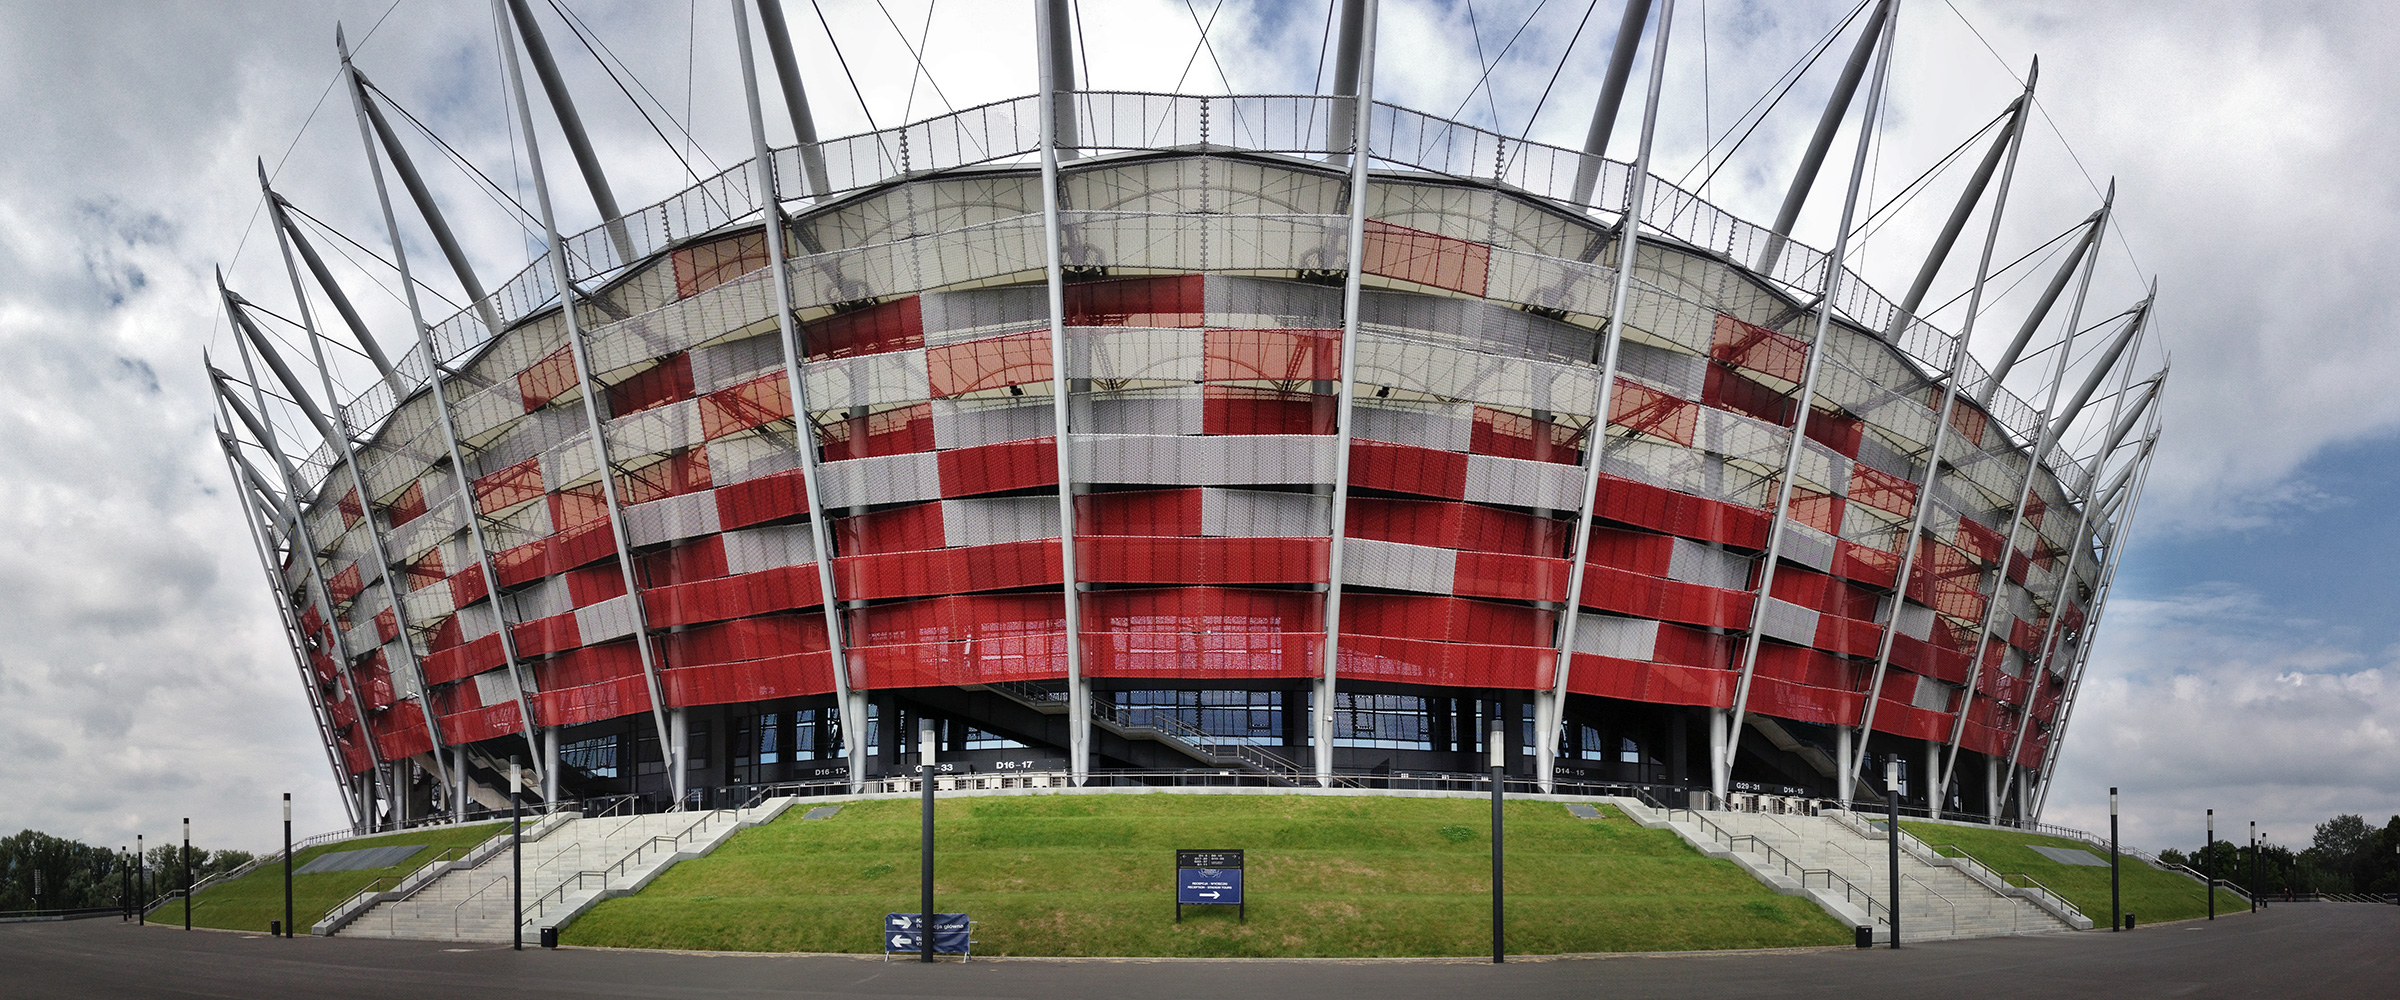 PANORAMA DIARY | Iphoneography blog | National Stadium